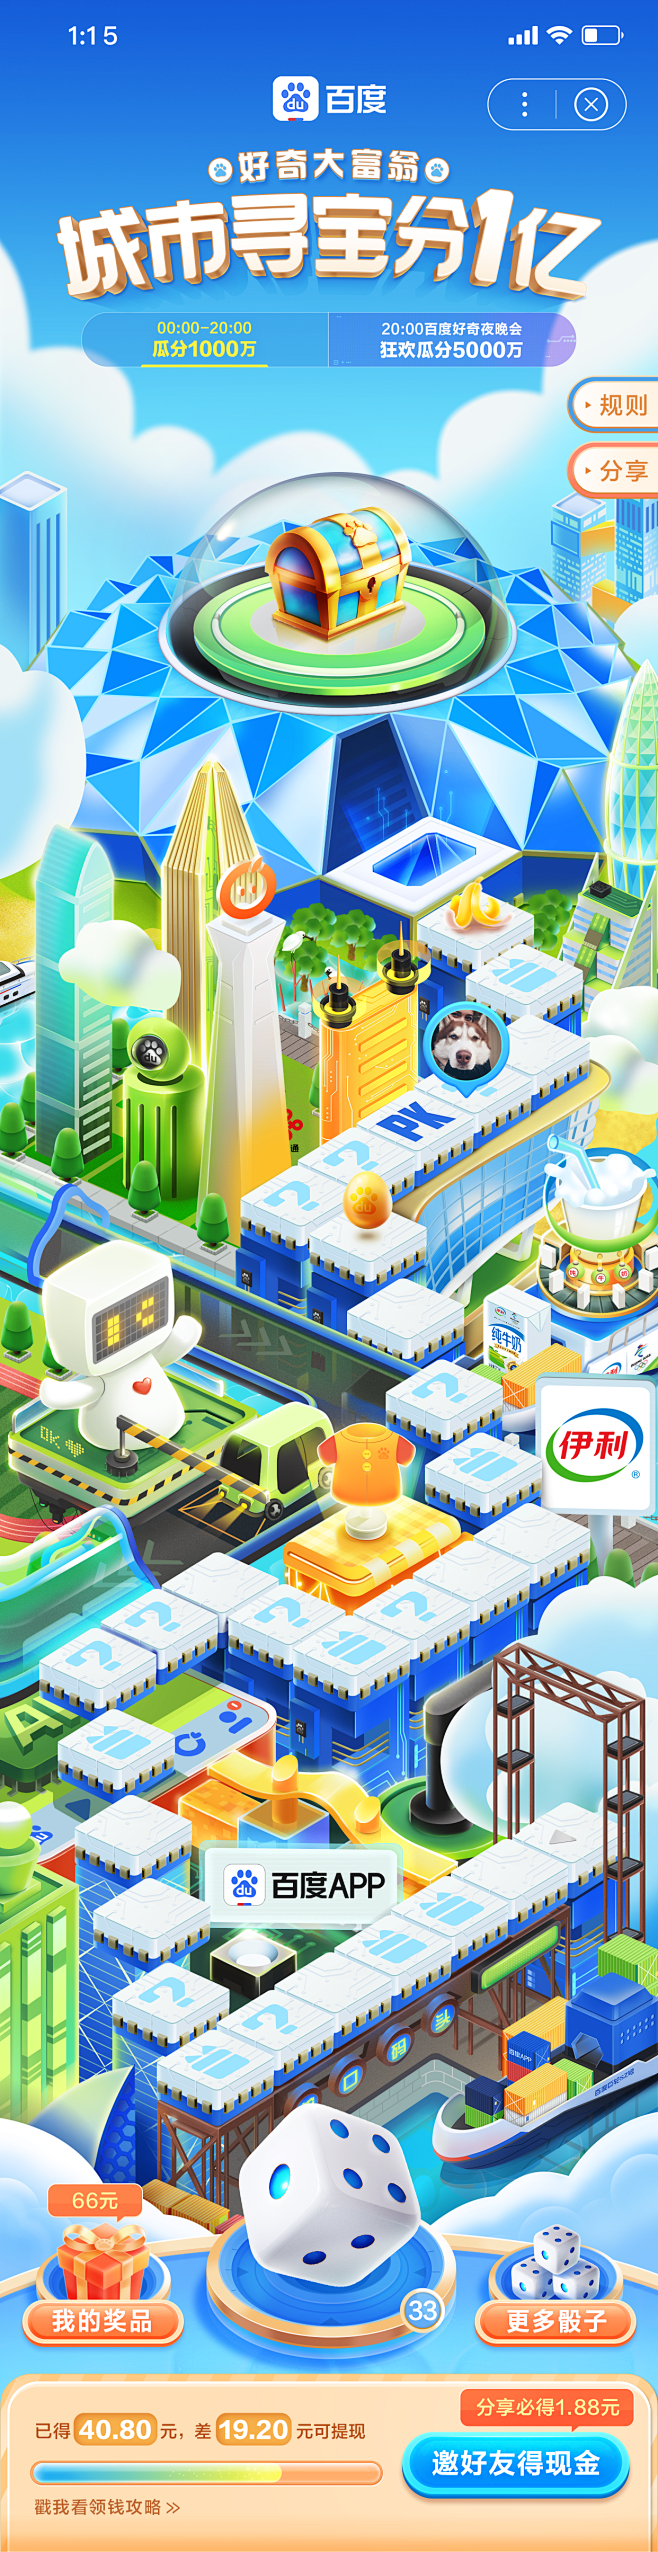 百度app《城市寻宝分一亿》毛小龙设计